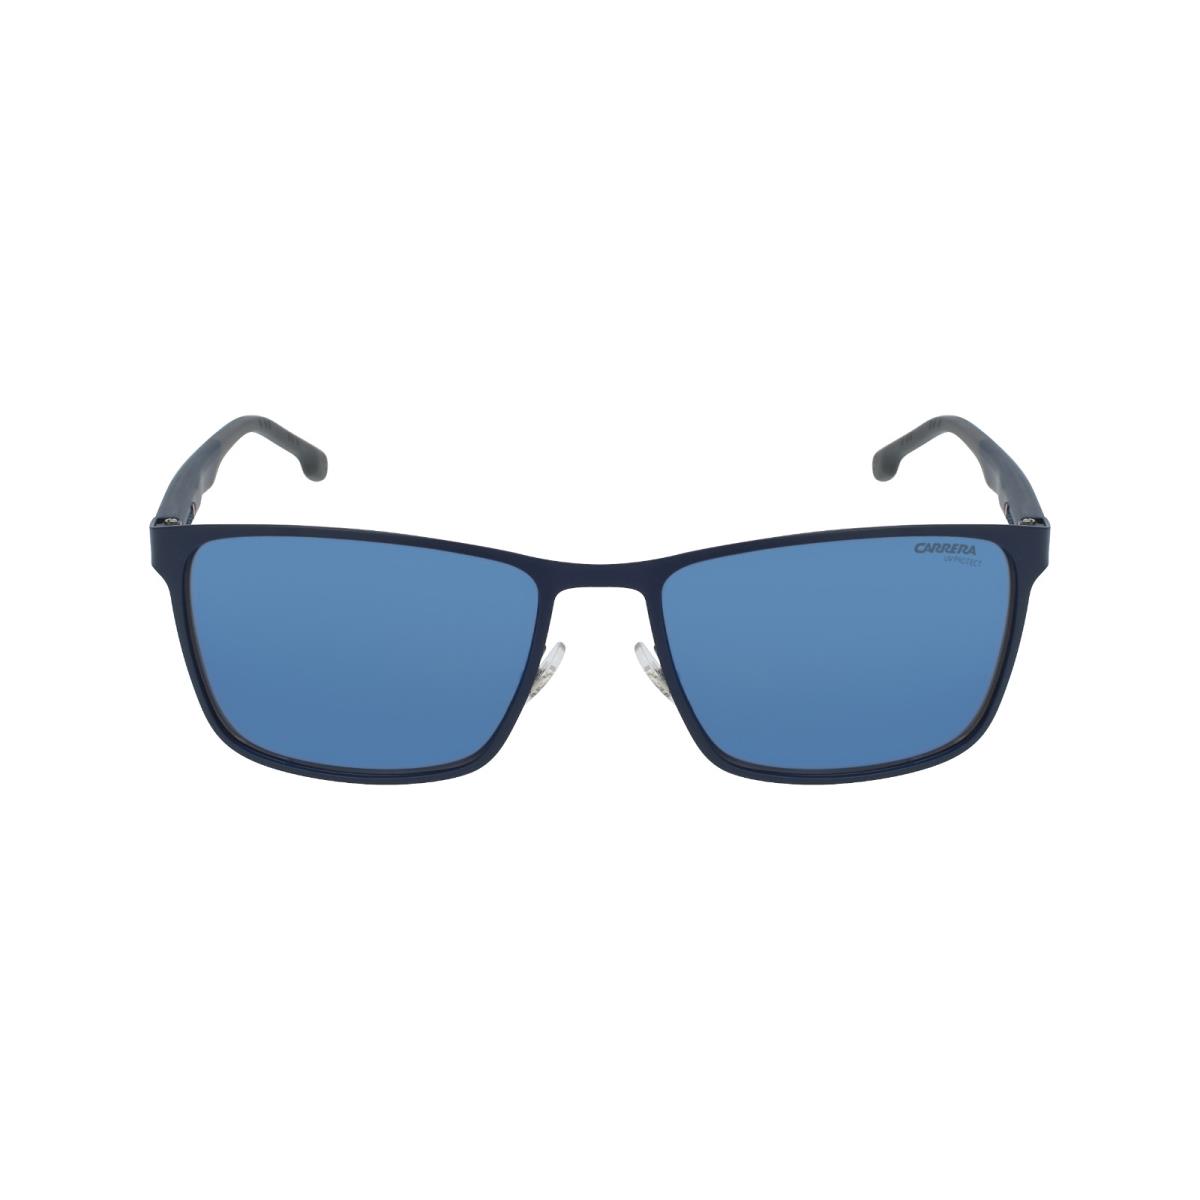 Carrera Sunglasses 8048 Pjp XT 58mm Blue Blue Mirrored Unisex St Steel